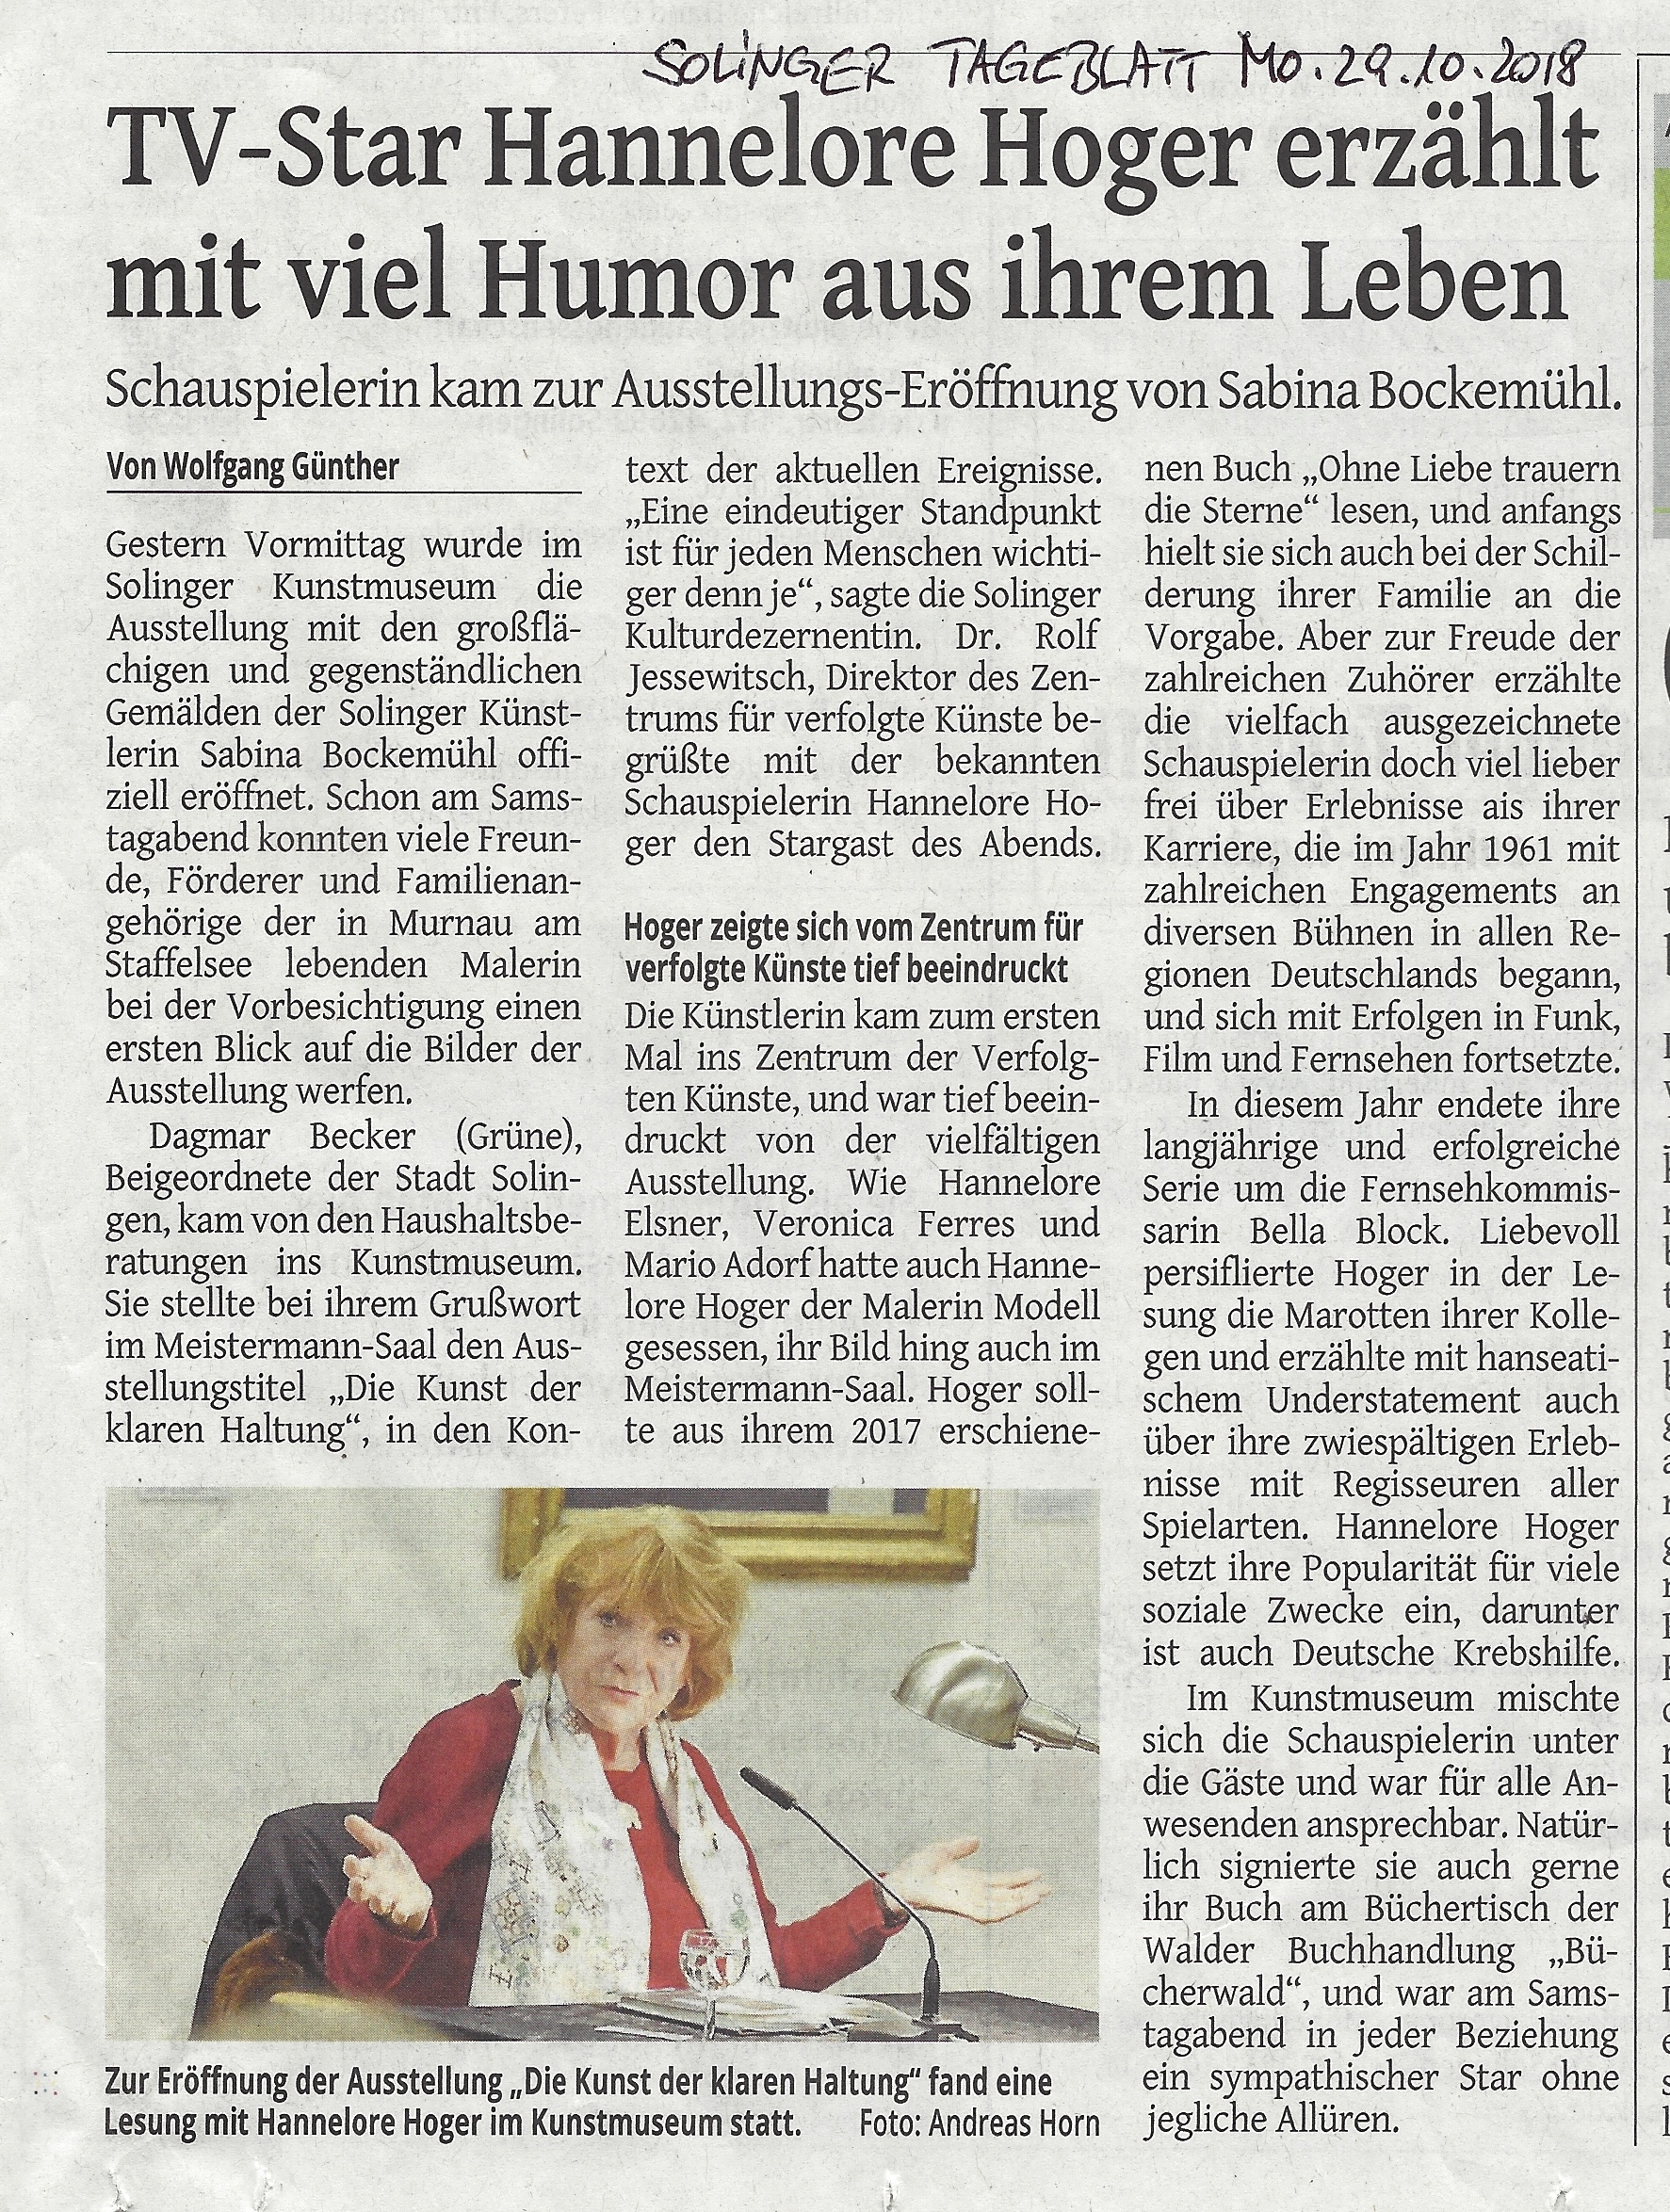 Solinger Tageblatt - TV-Star Hannelore Hoger erzählt mit viel Humor aus ihrem Leben